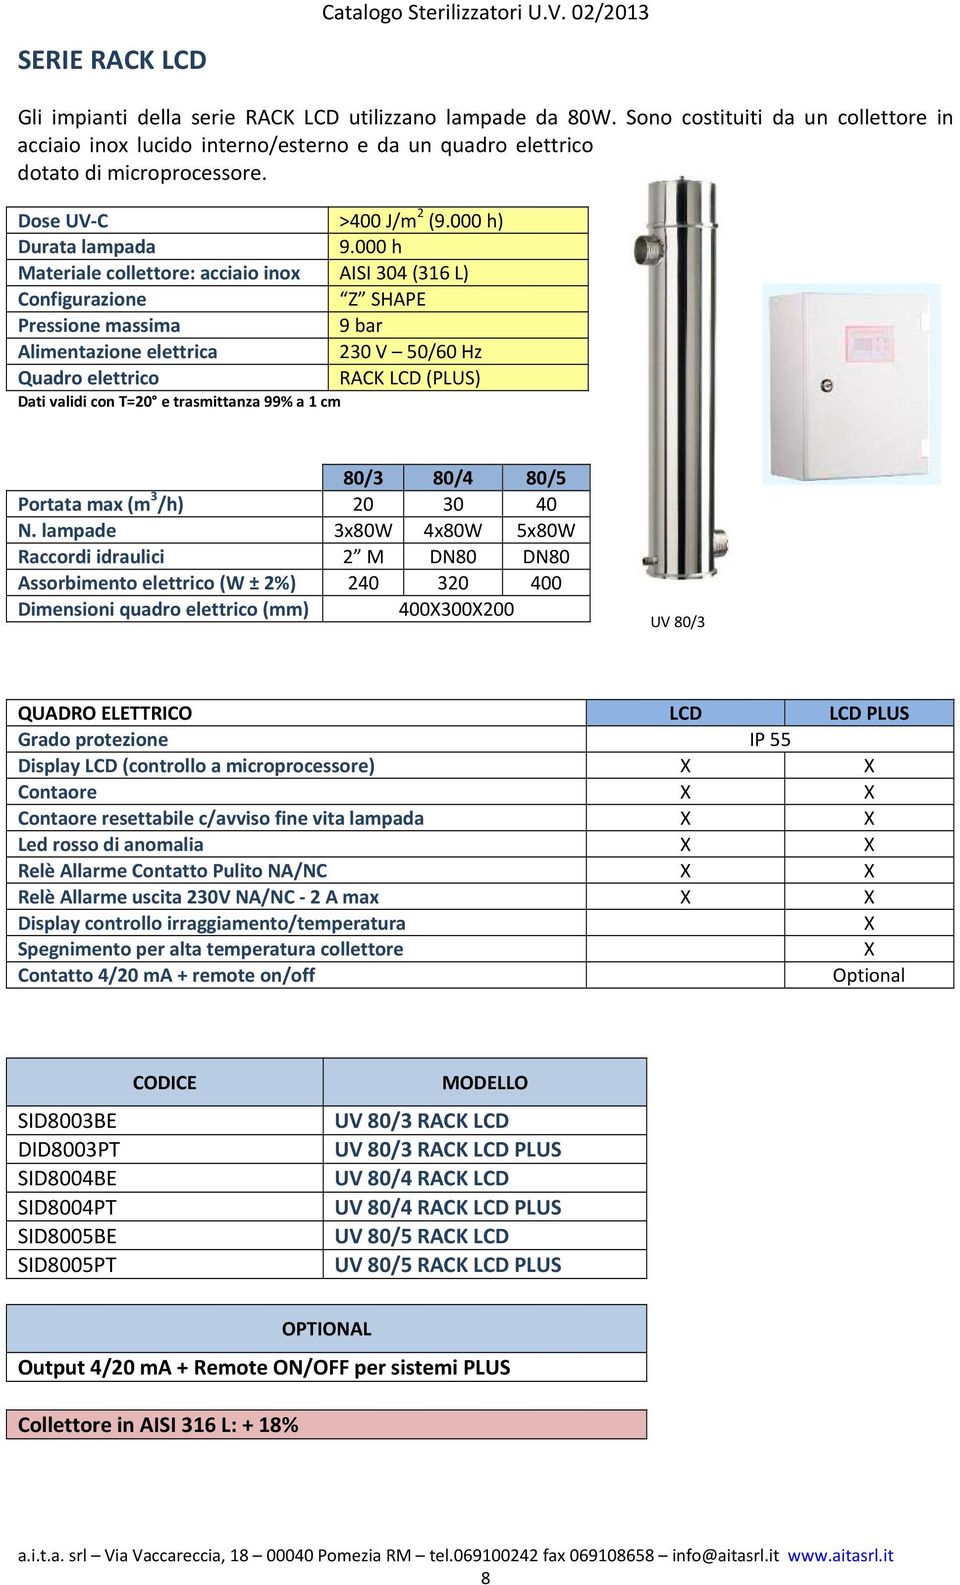 000 h Materiale collettore: acciaio inox AISI 304 (316 L) Configurazione Z SHAPE Pressione massima 9 bar Alimentazione elettrica 230 V 50/60 Hz Quadro elettrico RACK LCD (PLUS) Dati validi con T=20 e